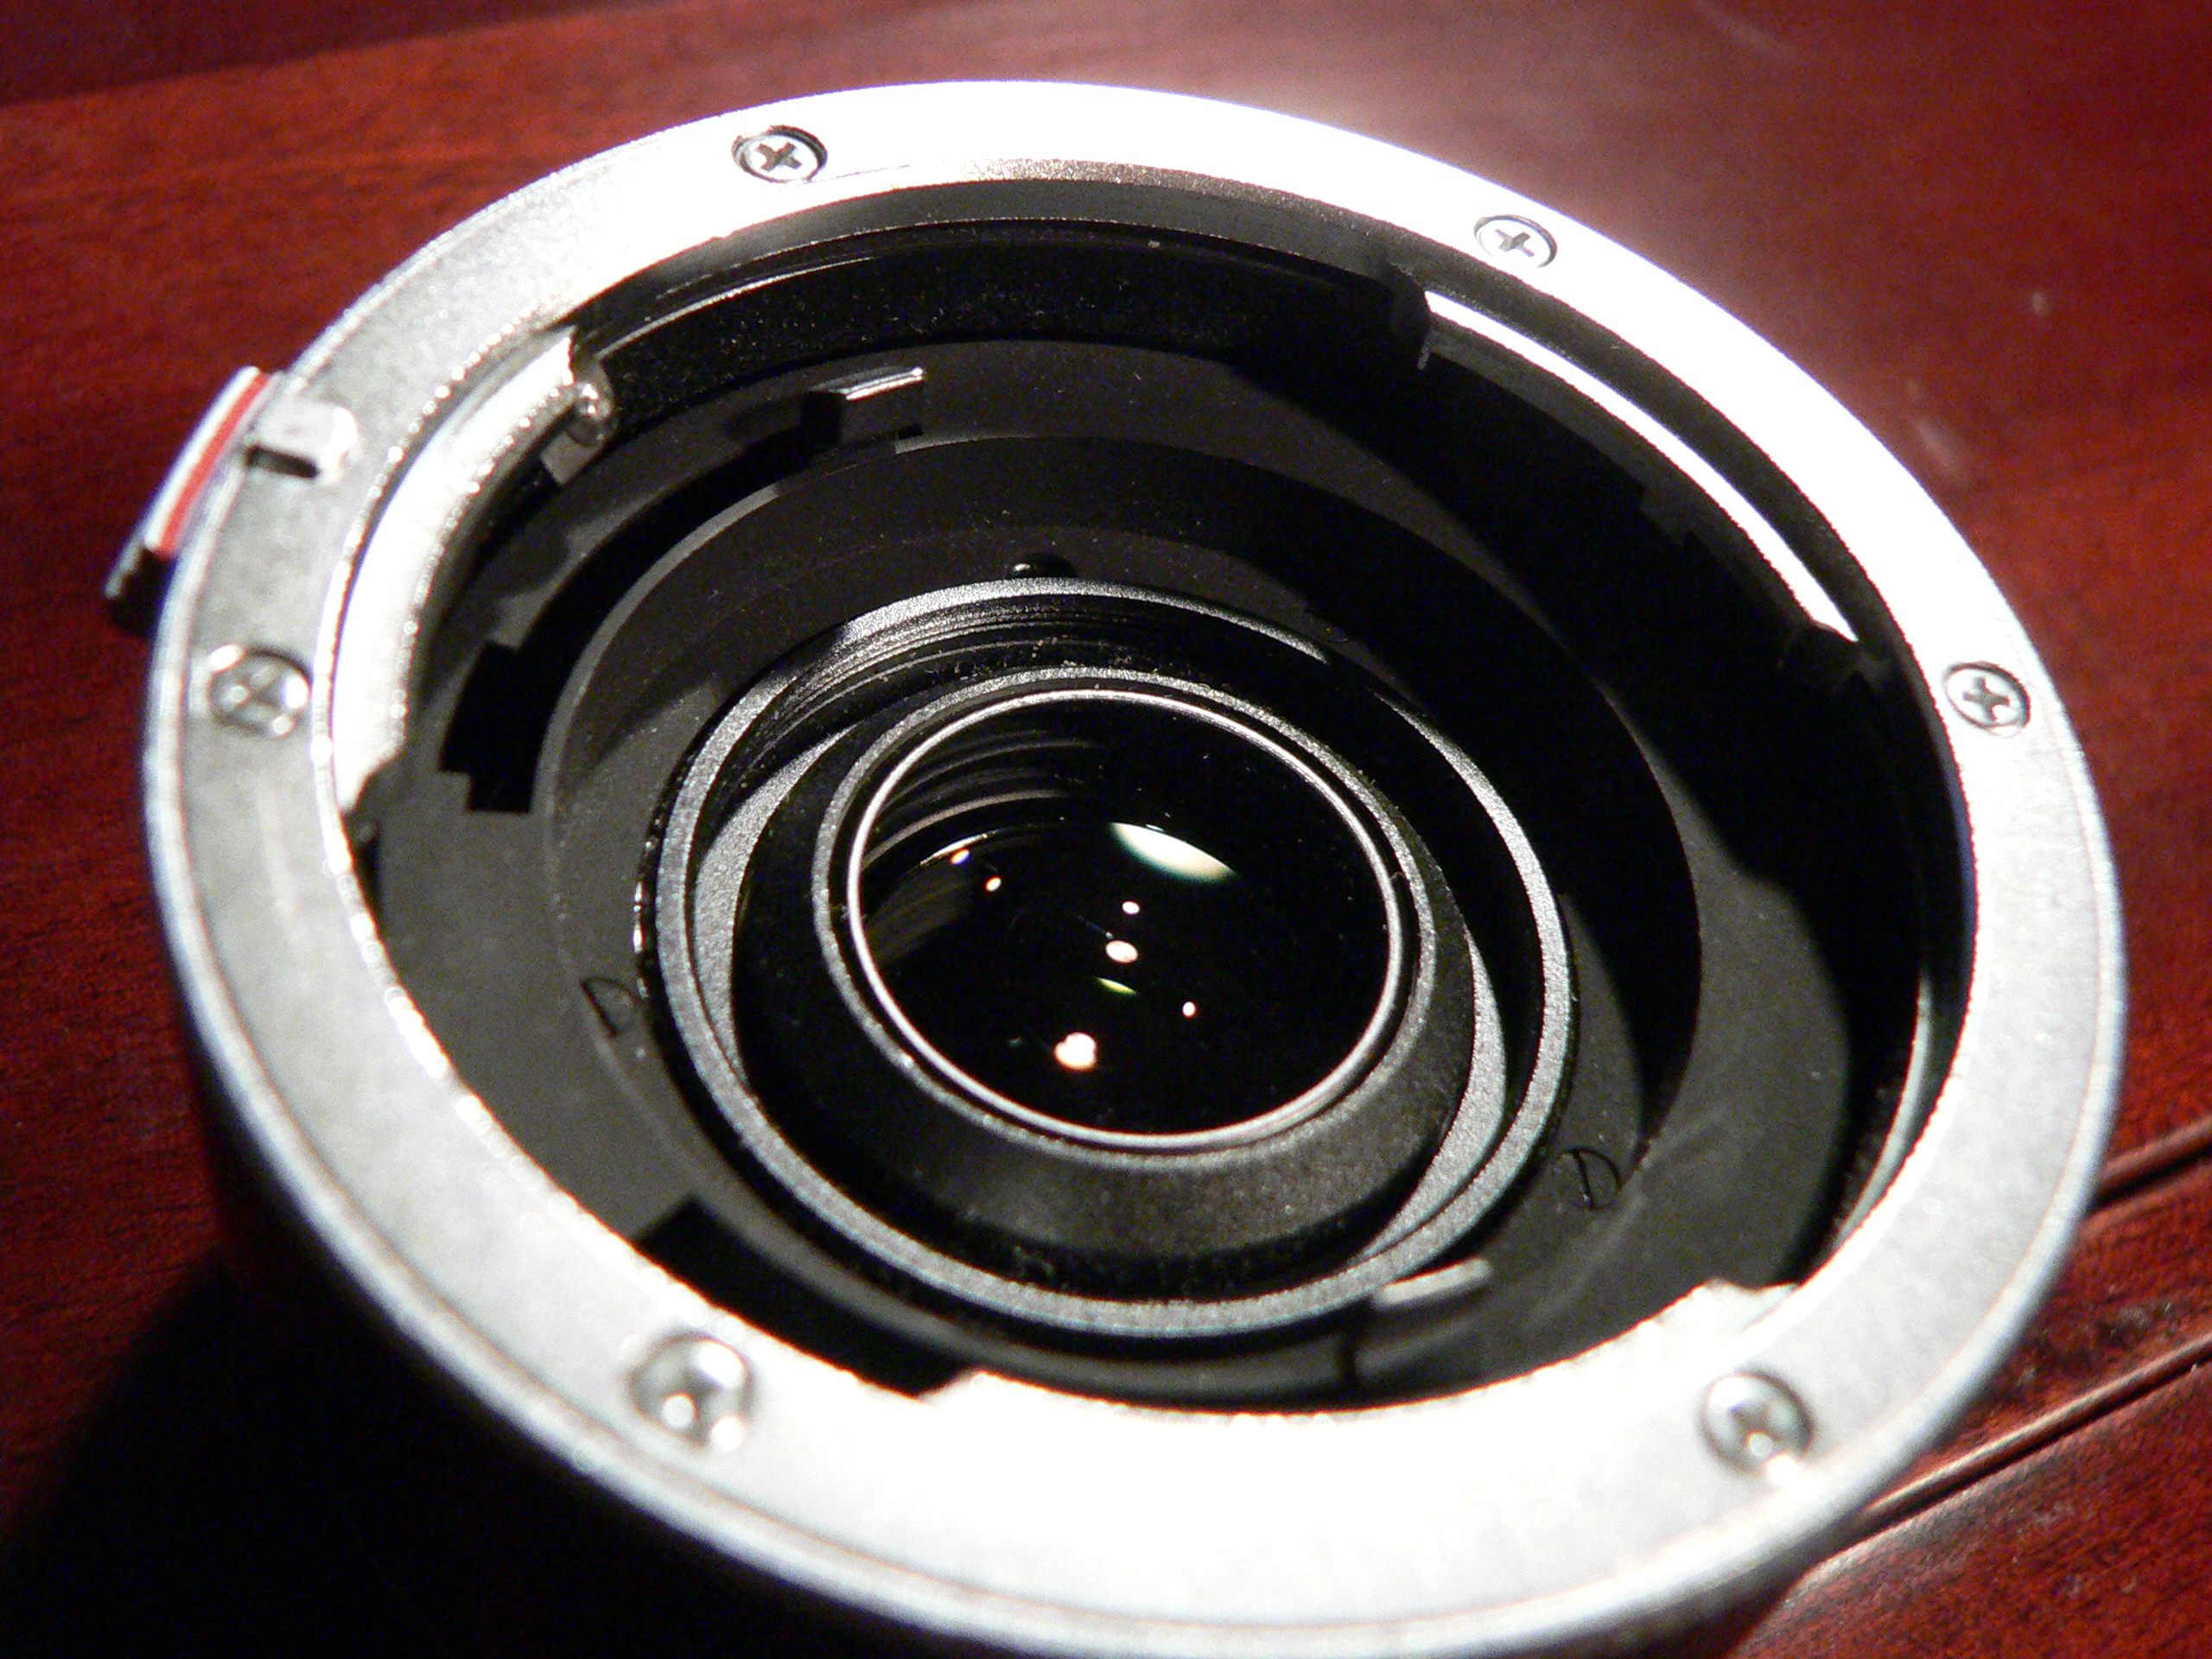 Leica-doubleur-p1020785